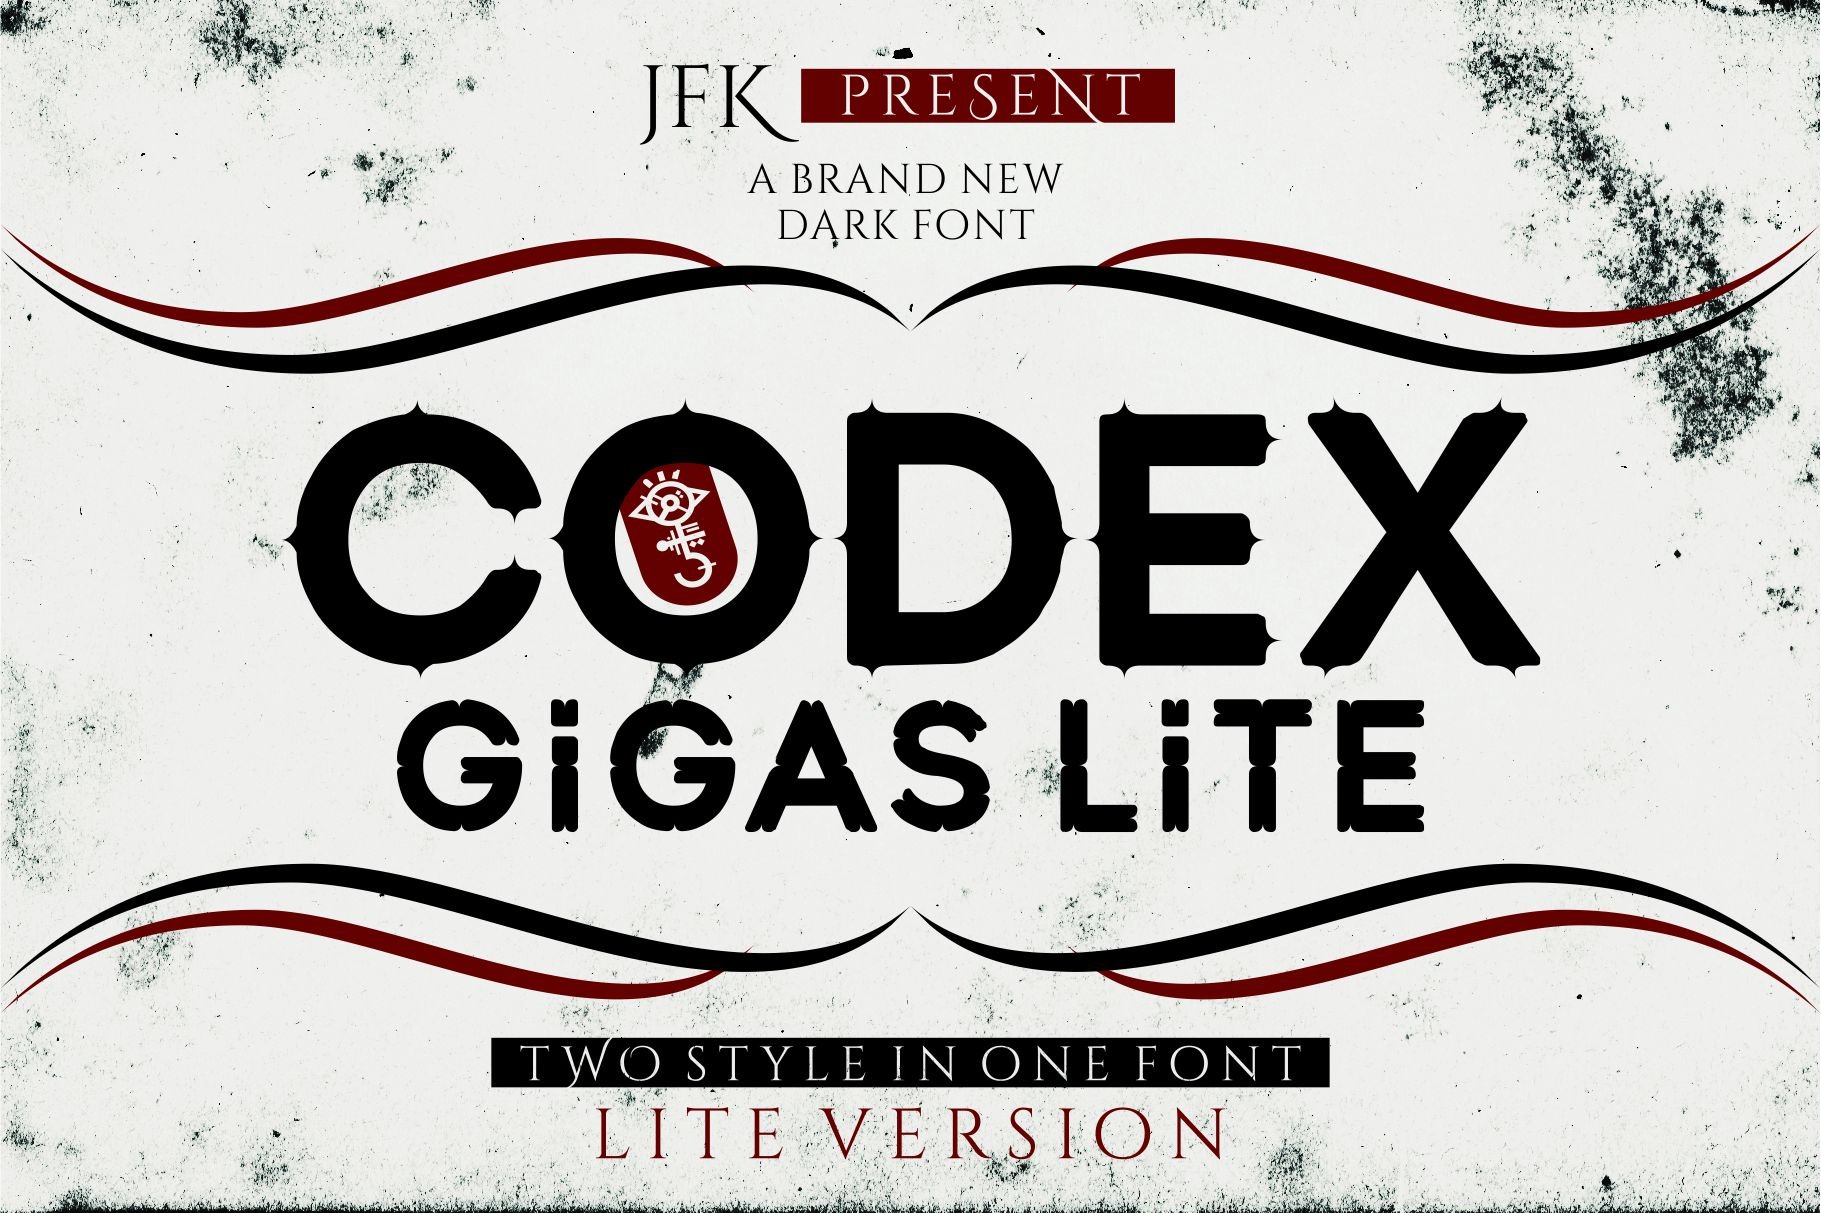 Codex Gigas (lite) cover image.